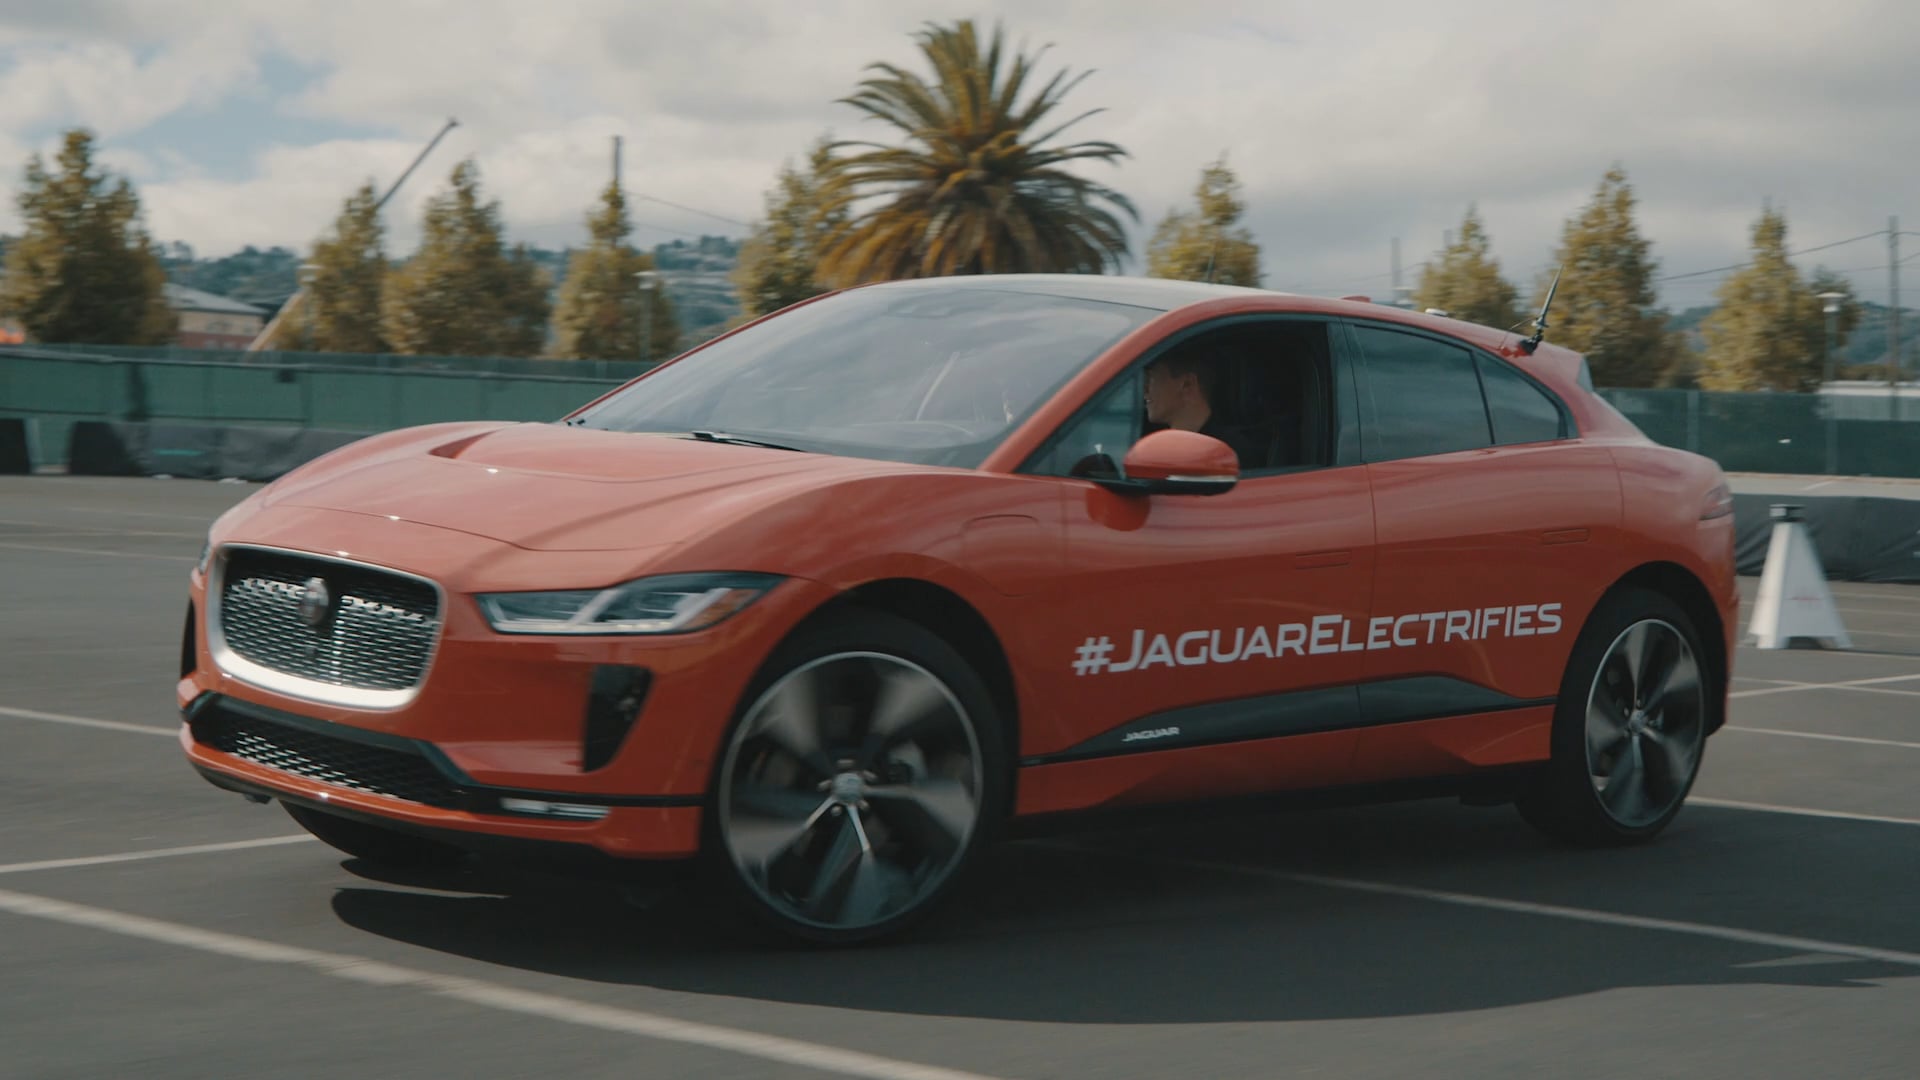 Jaguar Electrifies: San Francisco